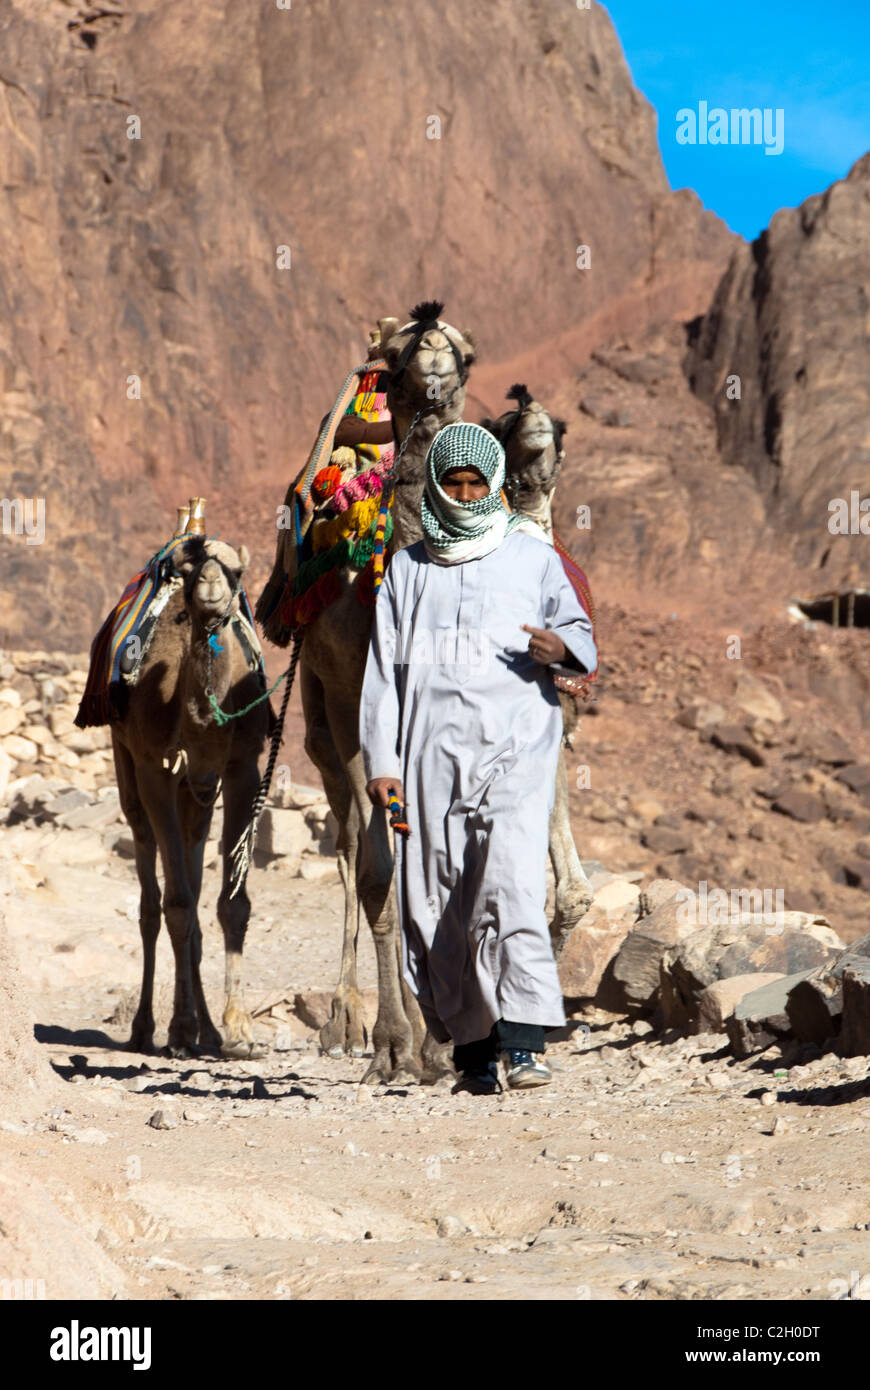 Jebelia bedouin descending mount Sinai with his camels - Sinai Mountains - Sinai Peninsula, Egypt Stock Photo